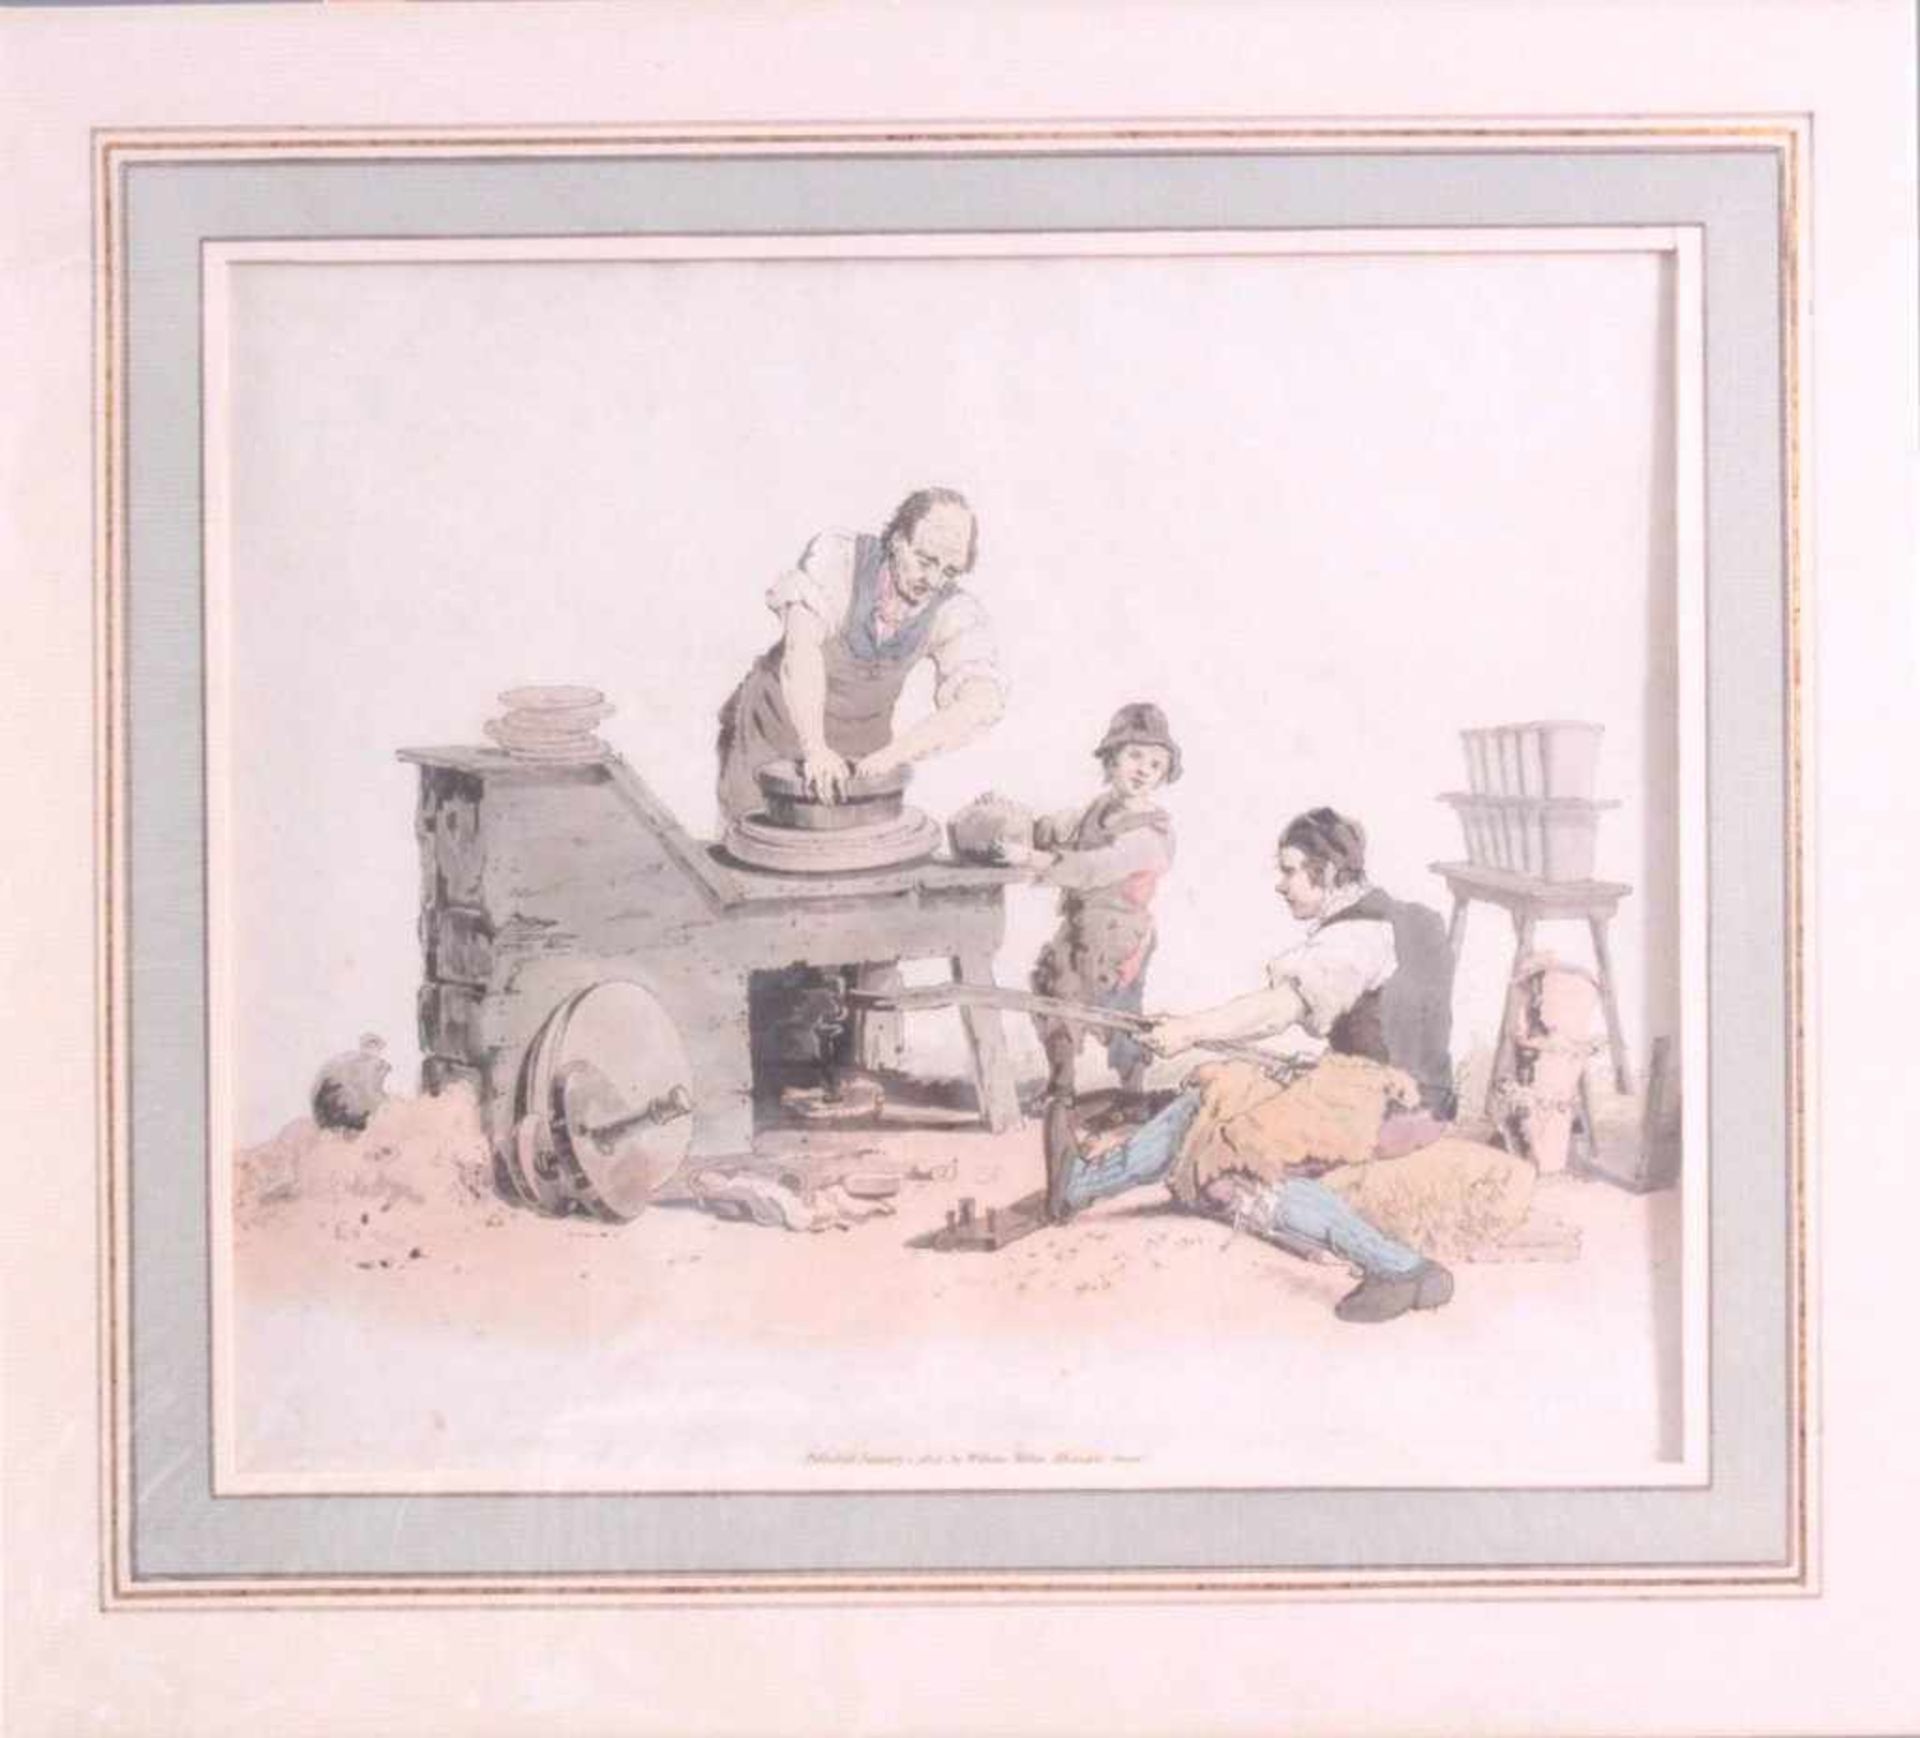 Farbaquatintaradierung, London bei William Miller 1805Berufe: Schmied mit Gehilfen bei der Arbeit, - Image 2 of 2